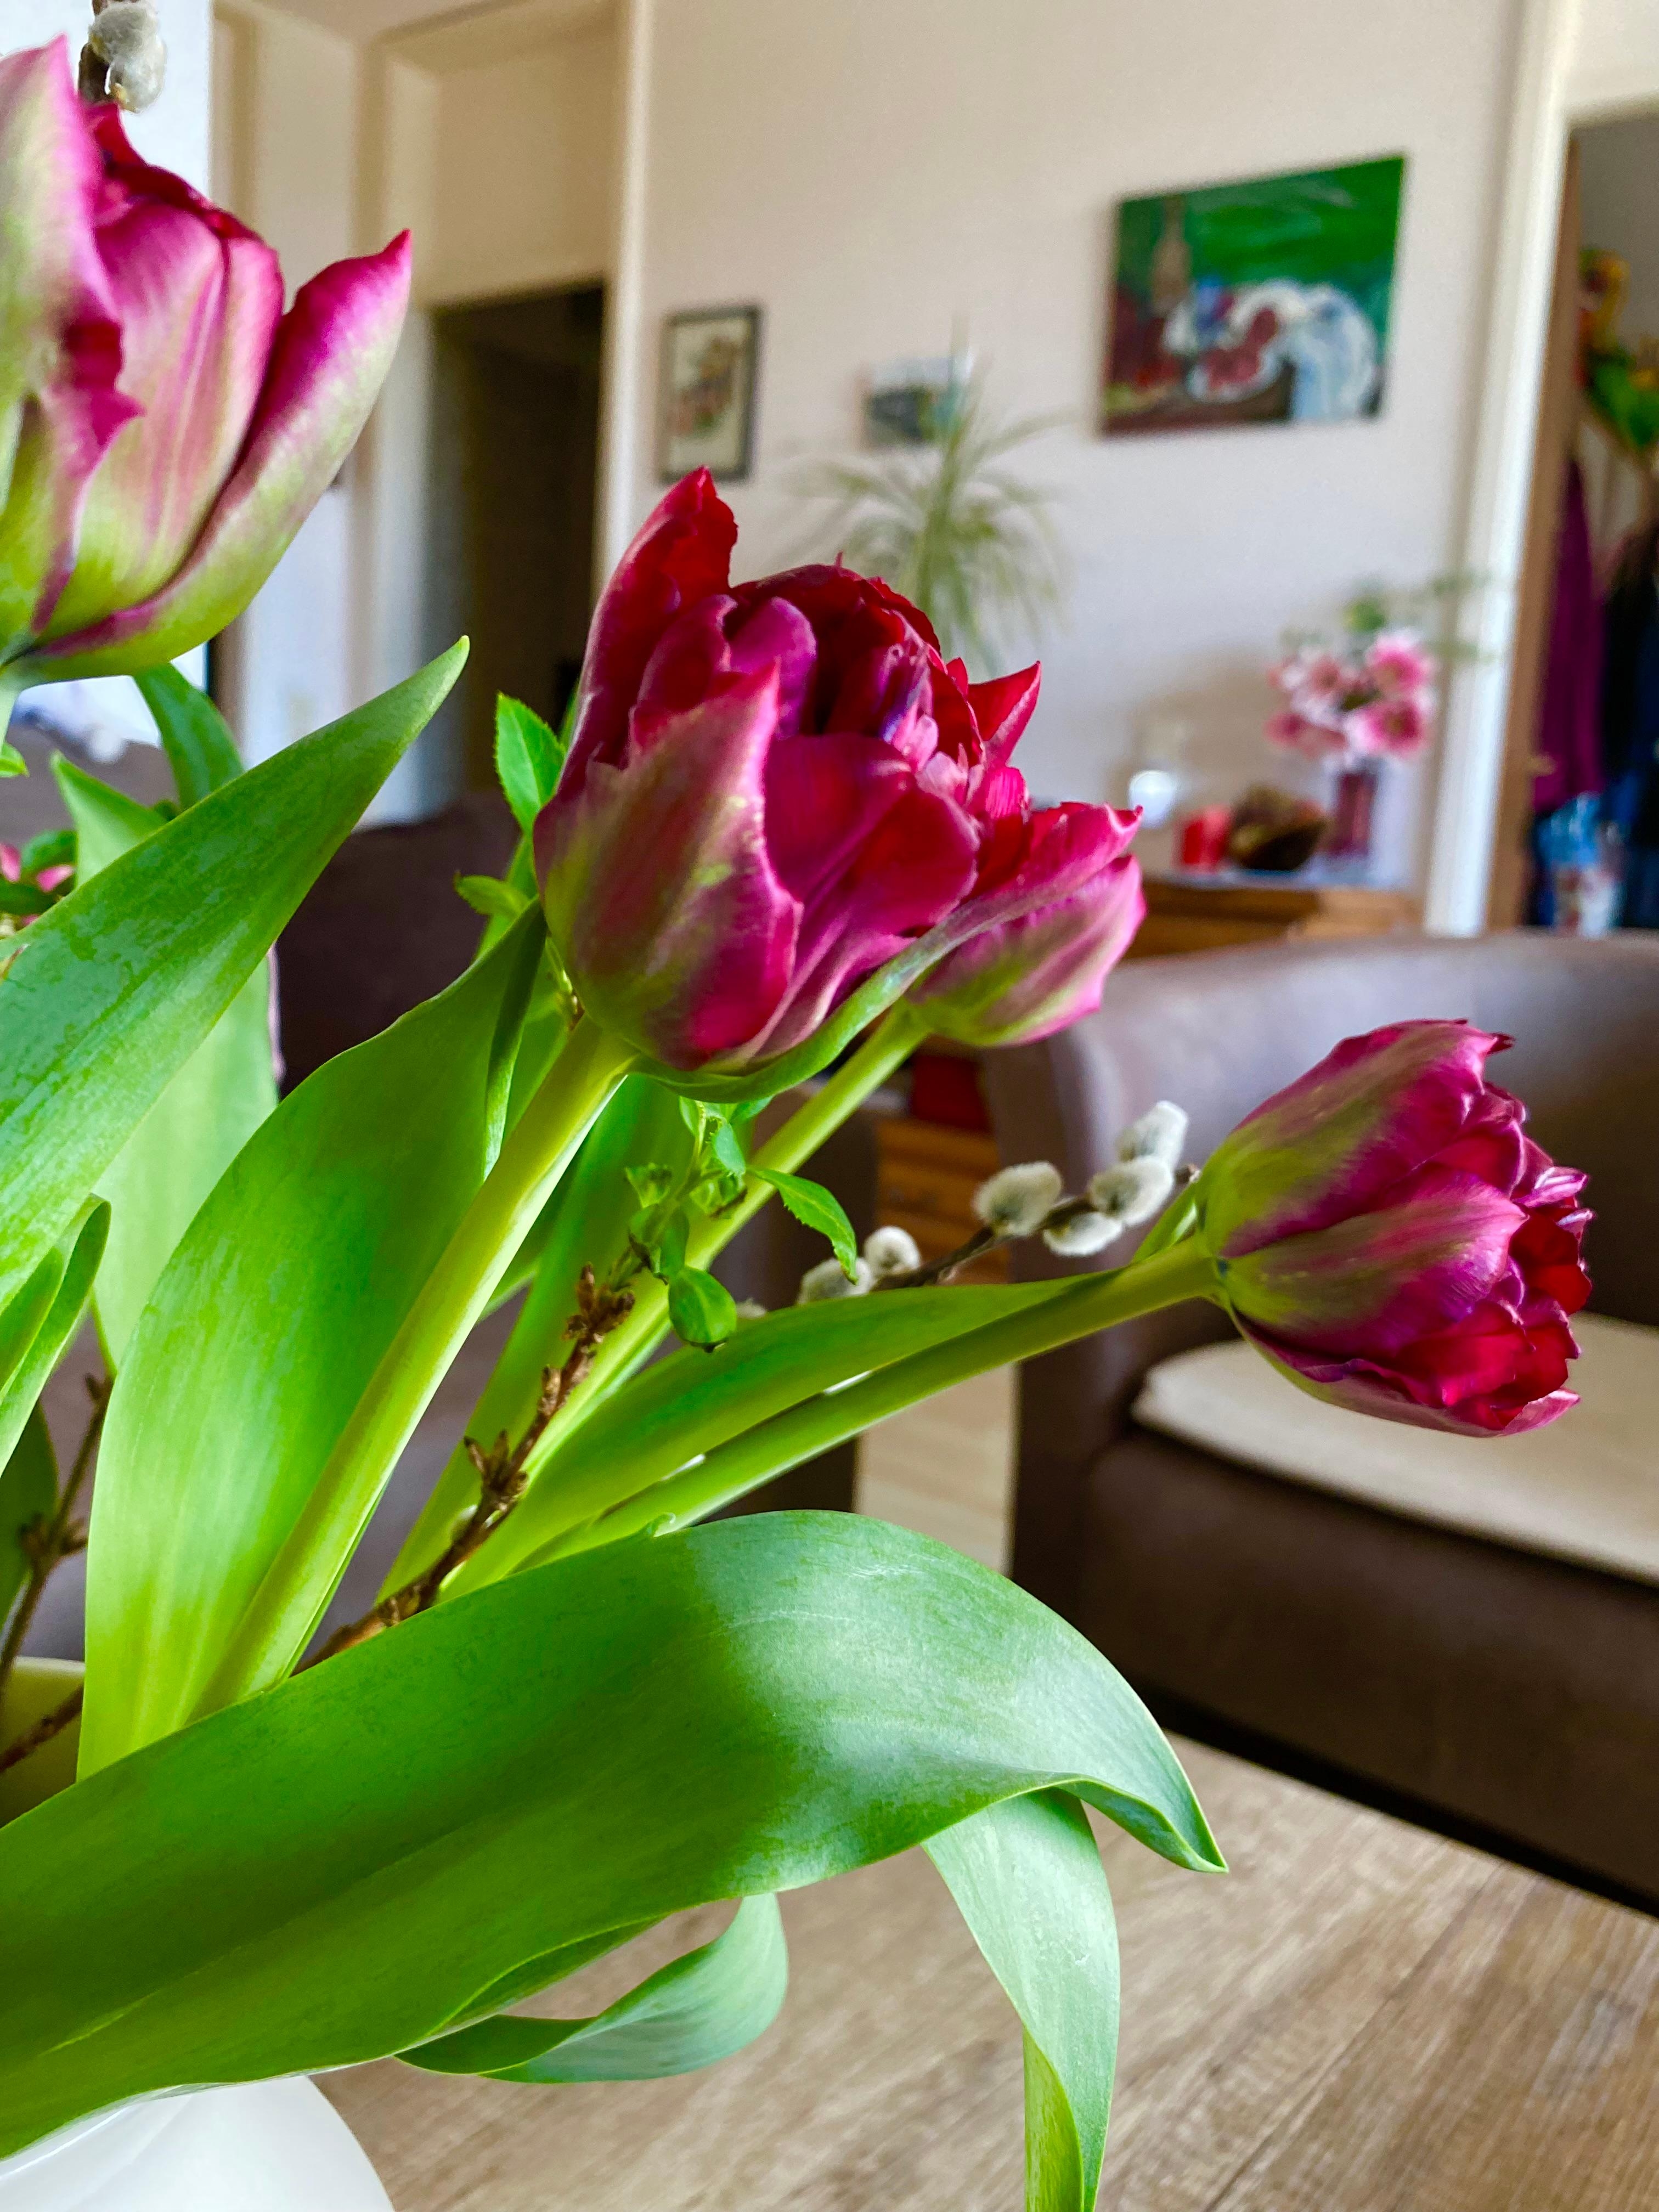 Aus meinem Wohnzimmer, mit frischen Tulpen 💐 vom Markt, wünsche ich ein sonniges Wochenende 😃
#blumenliebe #wohnzimmer #wochenende #sonne #frühling